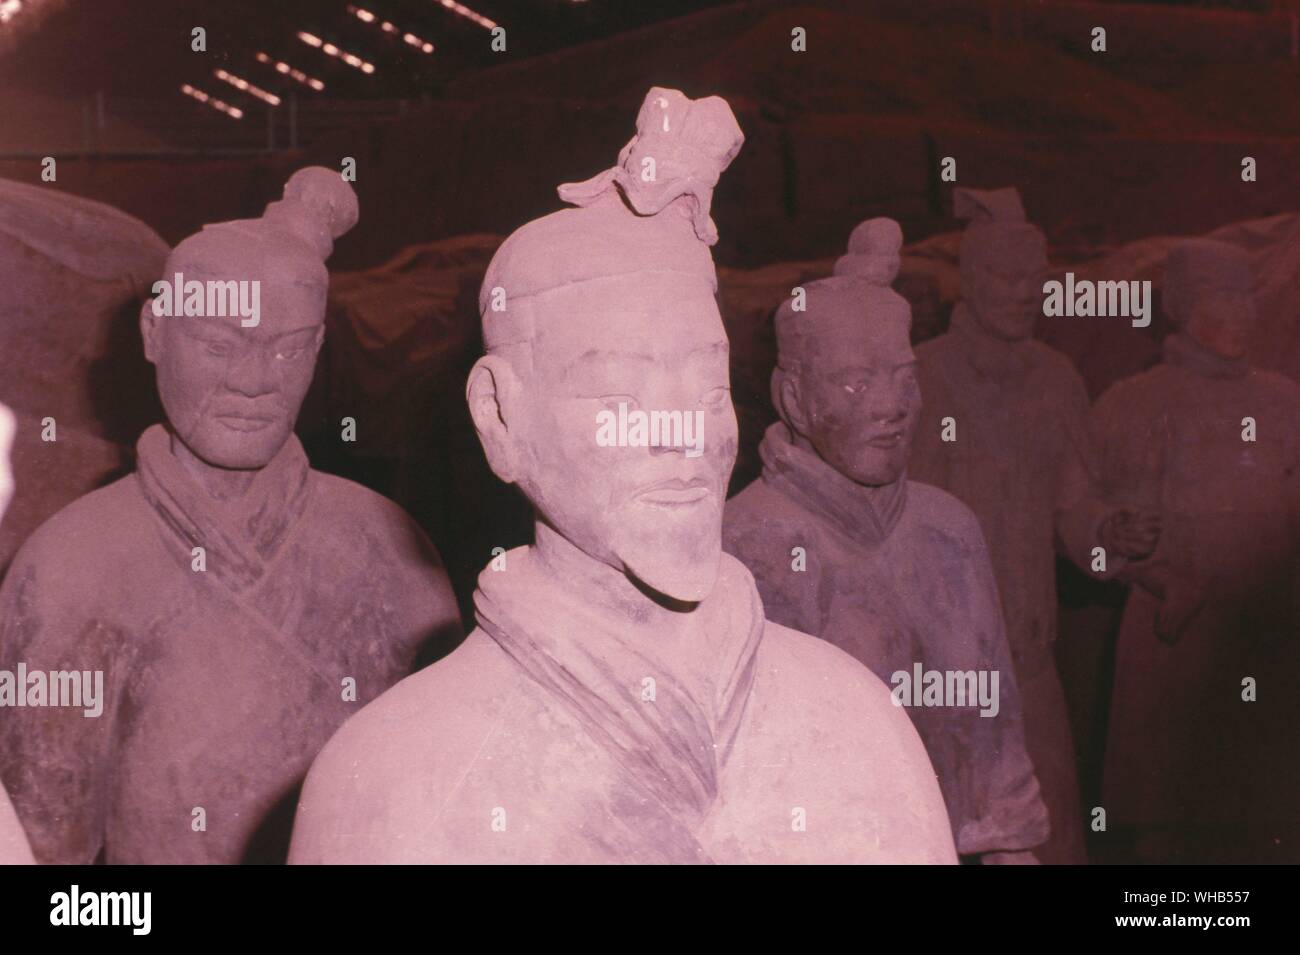 Die Terracotta Armee - Soldat und Pferd grabkunst Statuen oder Terracotta Krieger und Pferde ist eine Sammlung von 8,099 larger-than-life Chinesische Terracotta Figuren von Kriegern und Pferden in der Nähe des Mausoleums des Ersten Kaisers Qin die Zahlen in der Höhe variieren, je nach Ihrem Rang, das Höchste, die Generäle. Die Höhe reicht von 184-197 cm (6 ft - 18 ft 5 in.) oder mehr als ein voller Fuß höher als der durchschnittliche Soldat der Periode. Die Zahlen wurden 1974 in der Nähe von Xi'an, Provinz Shaanxi, China von einem lokalen Landwirt entdeckt.. Stockfoto